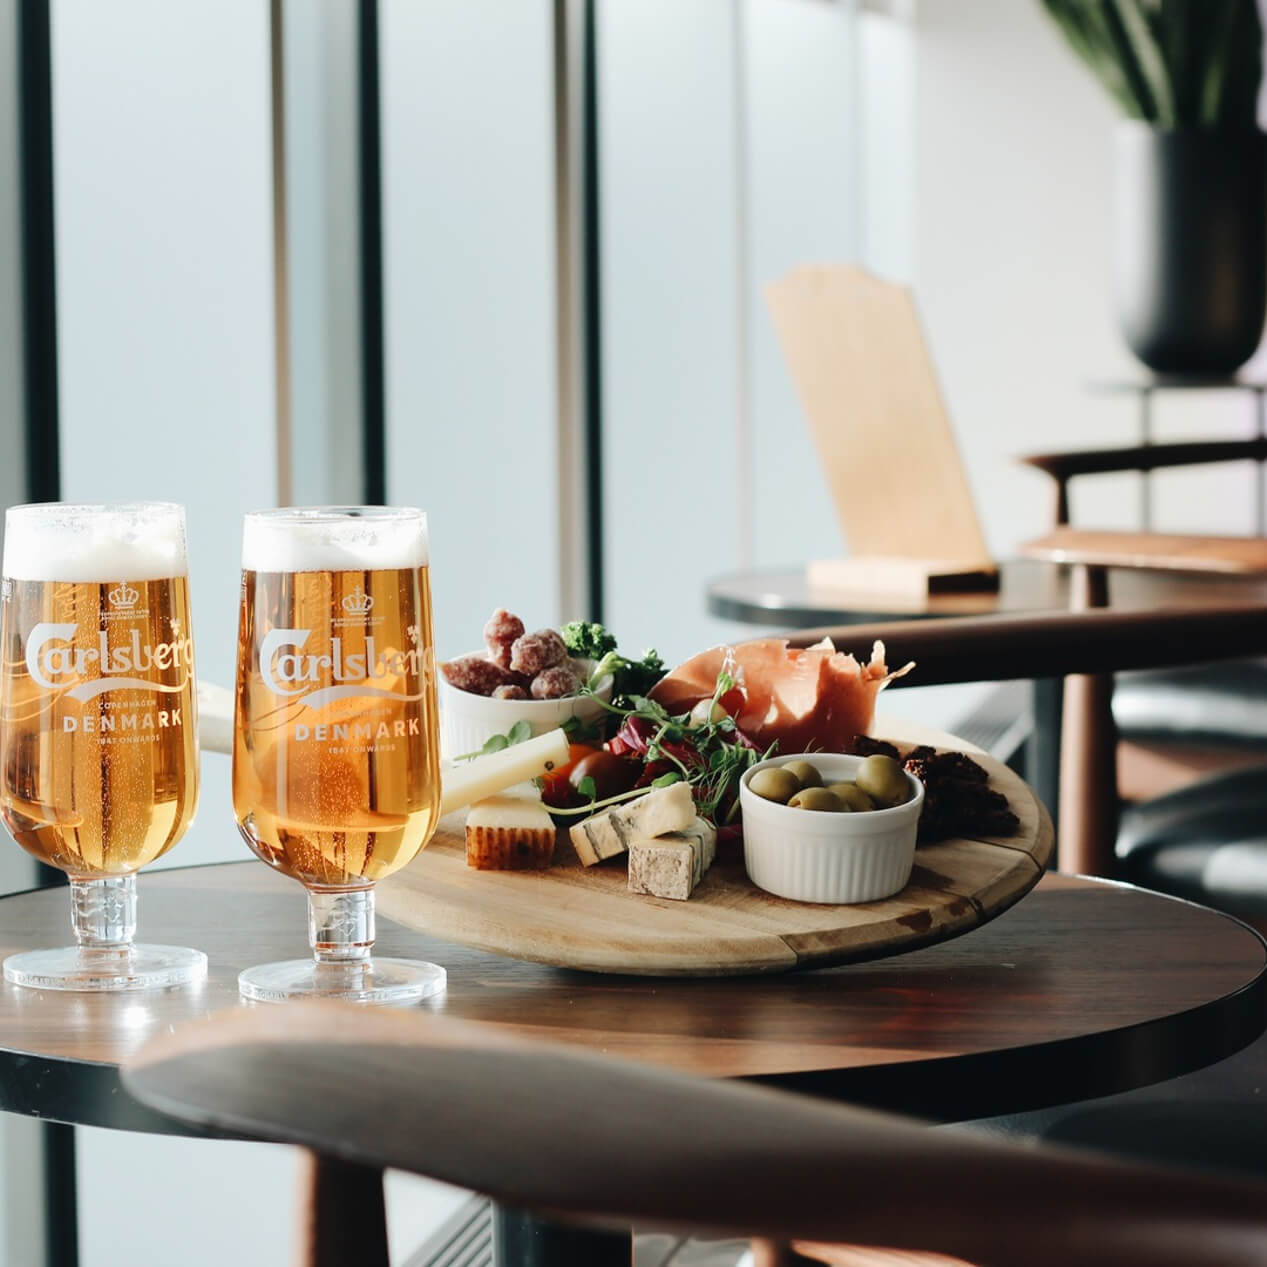 Öl och snacks på Bar With a View nära flygplatsen i Köpenhamn.